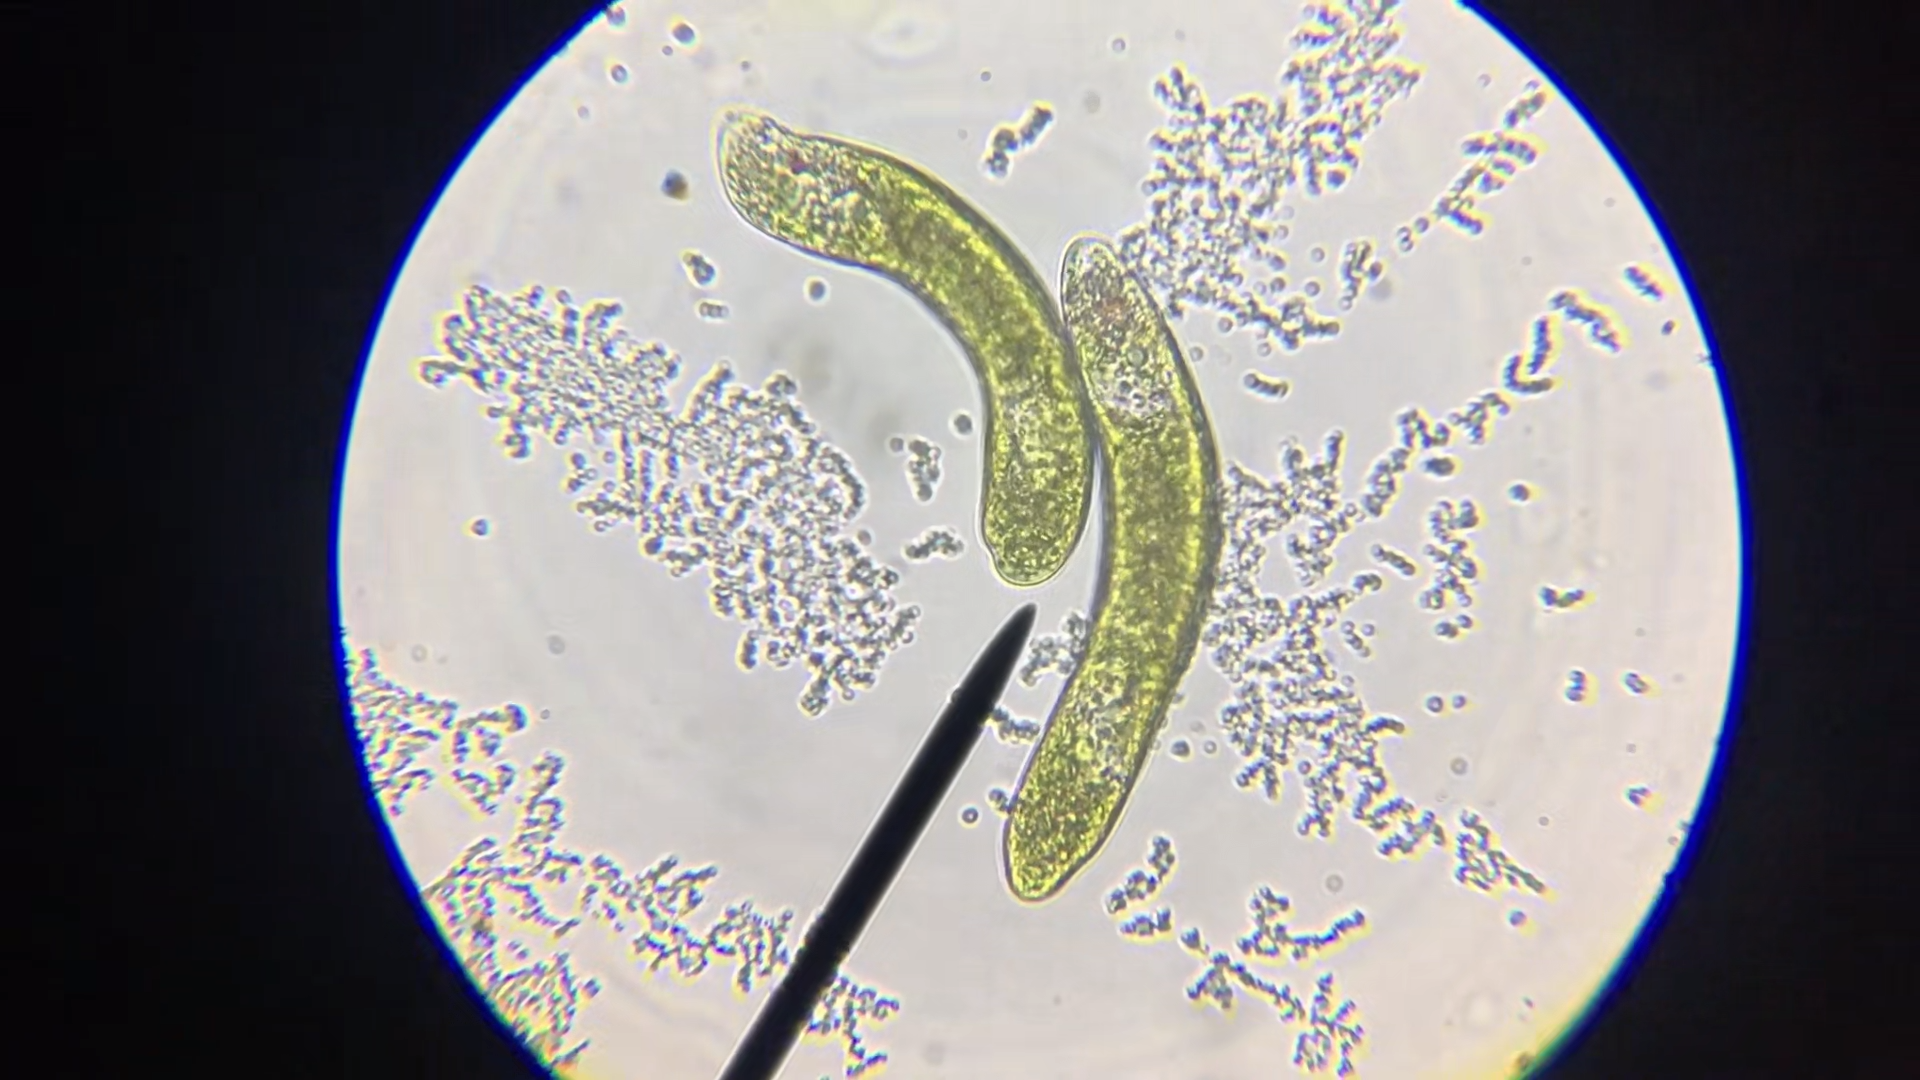 Das Bild zeigt in einem kreisrunden Ausschnitt kleinste Lebewesen unter einem Mikroskop.